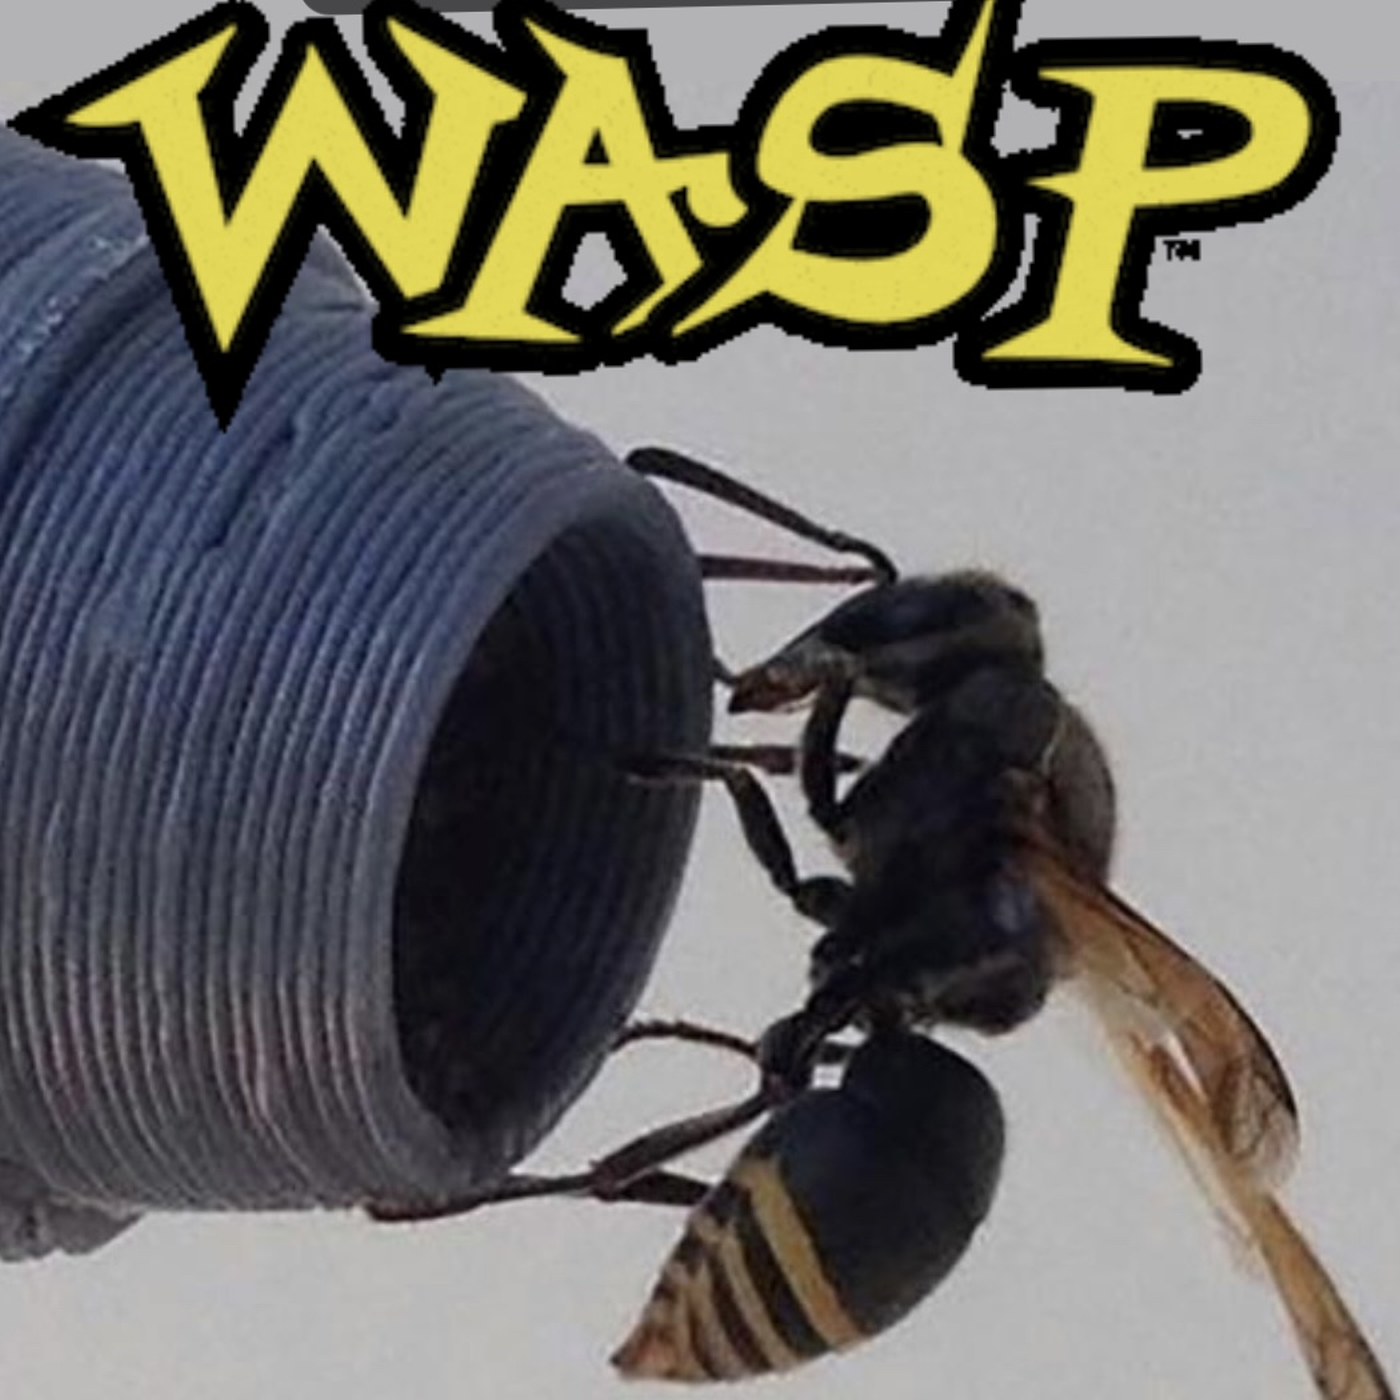 27. Wasp - Birgenair 301